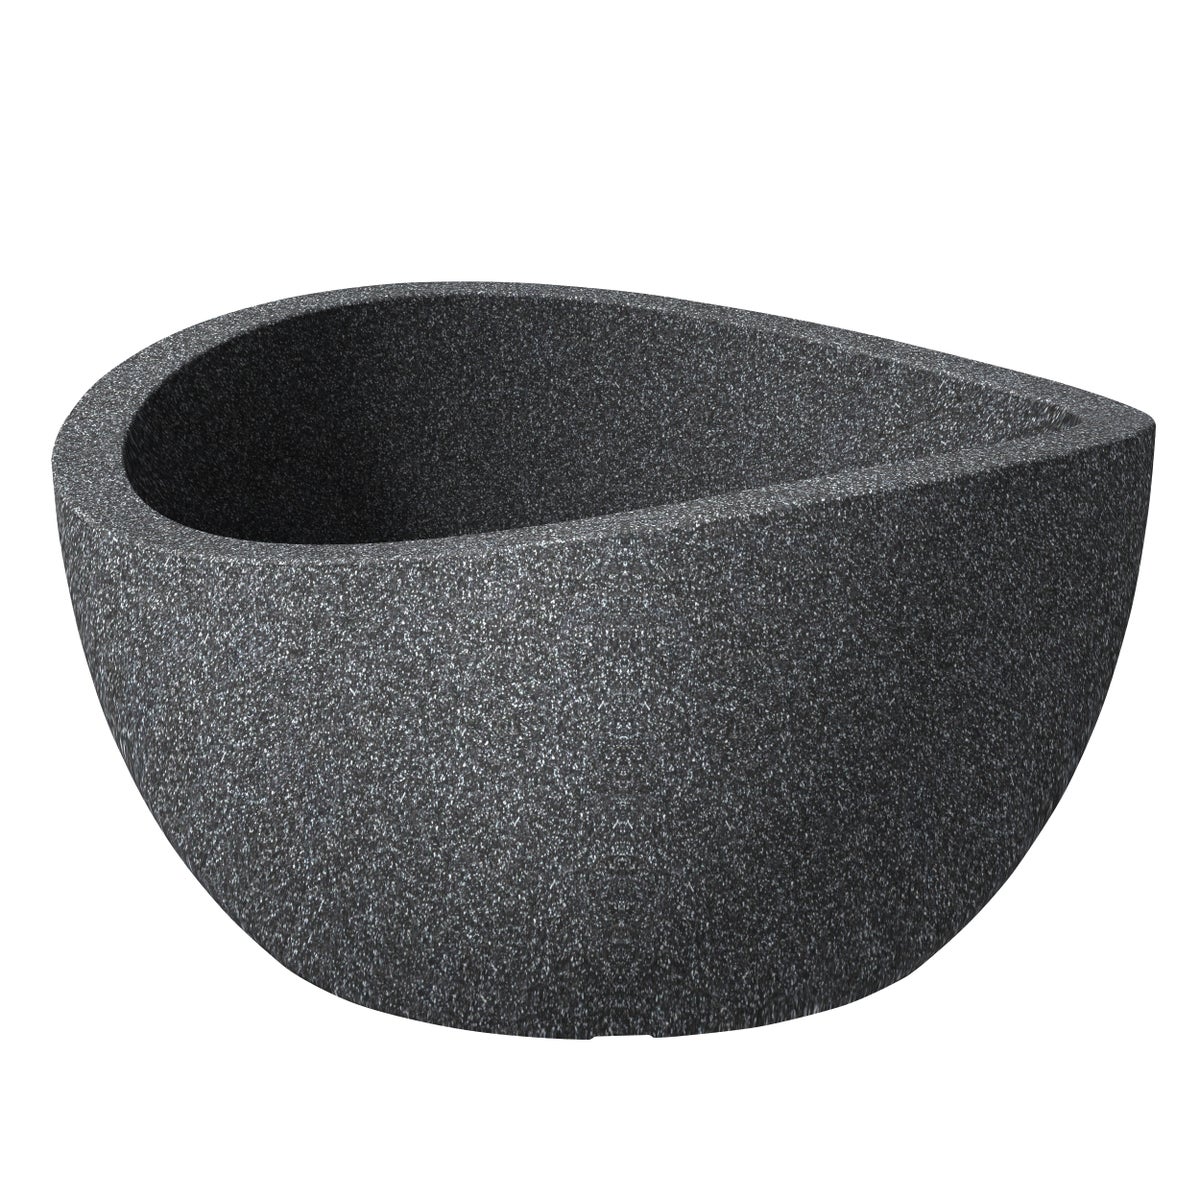 Scheurich Wave Globe Bowl 40, Pflanzschale/Blumentopf/Pflanzkübel, rund,  aus Kunststoff Farbe: Schwarz-Granit, 39,3 cm Durchmesser, 21 cm hoch, 12 l Vol.